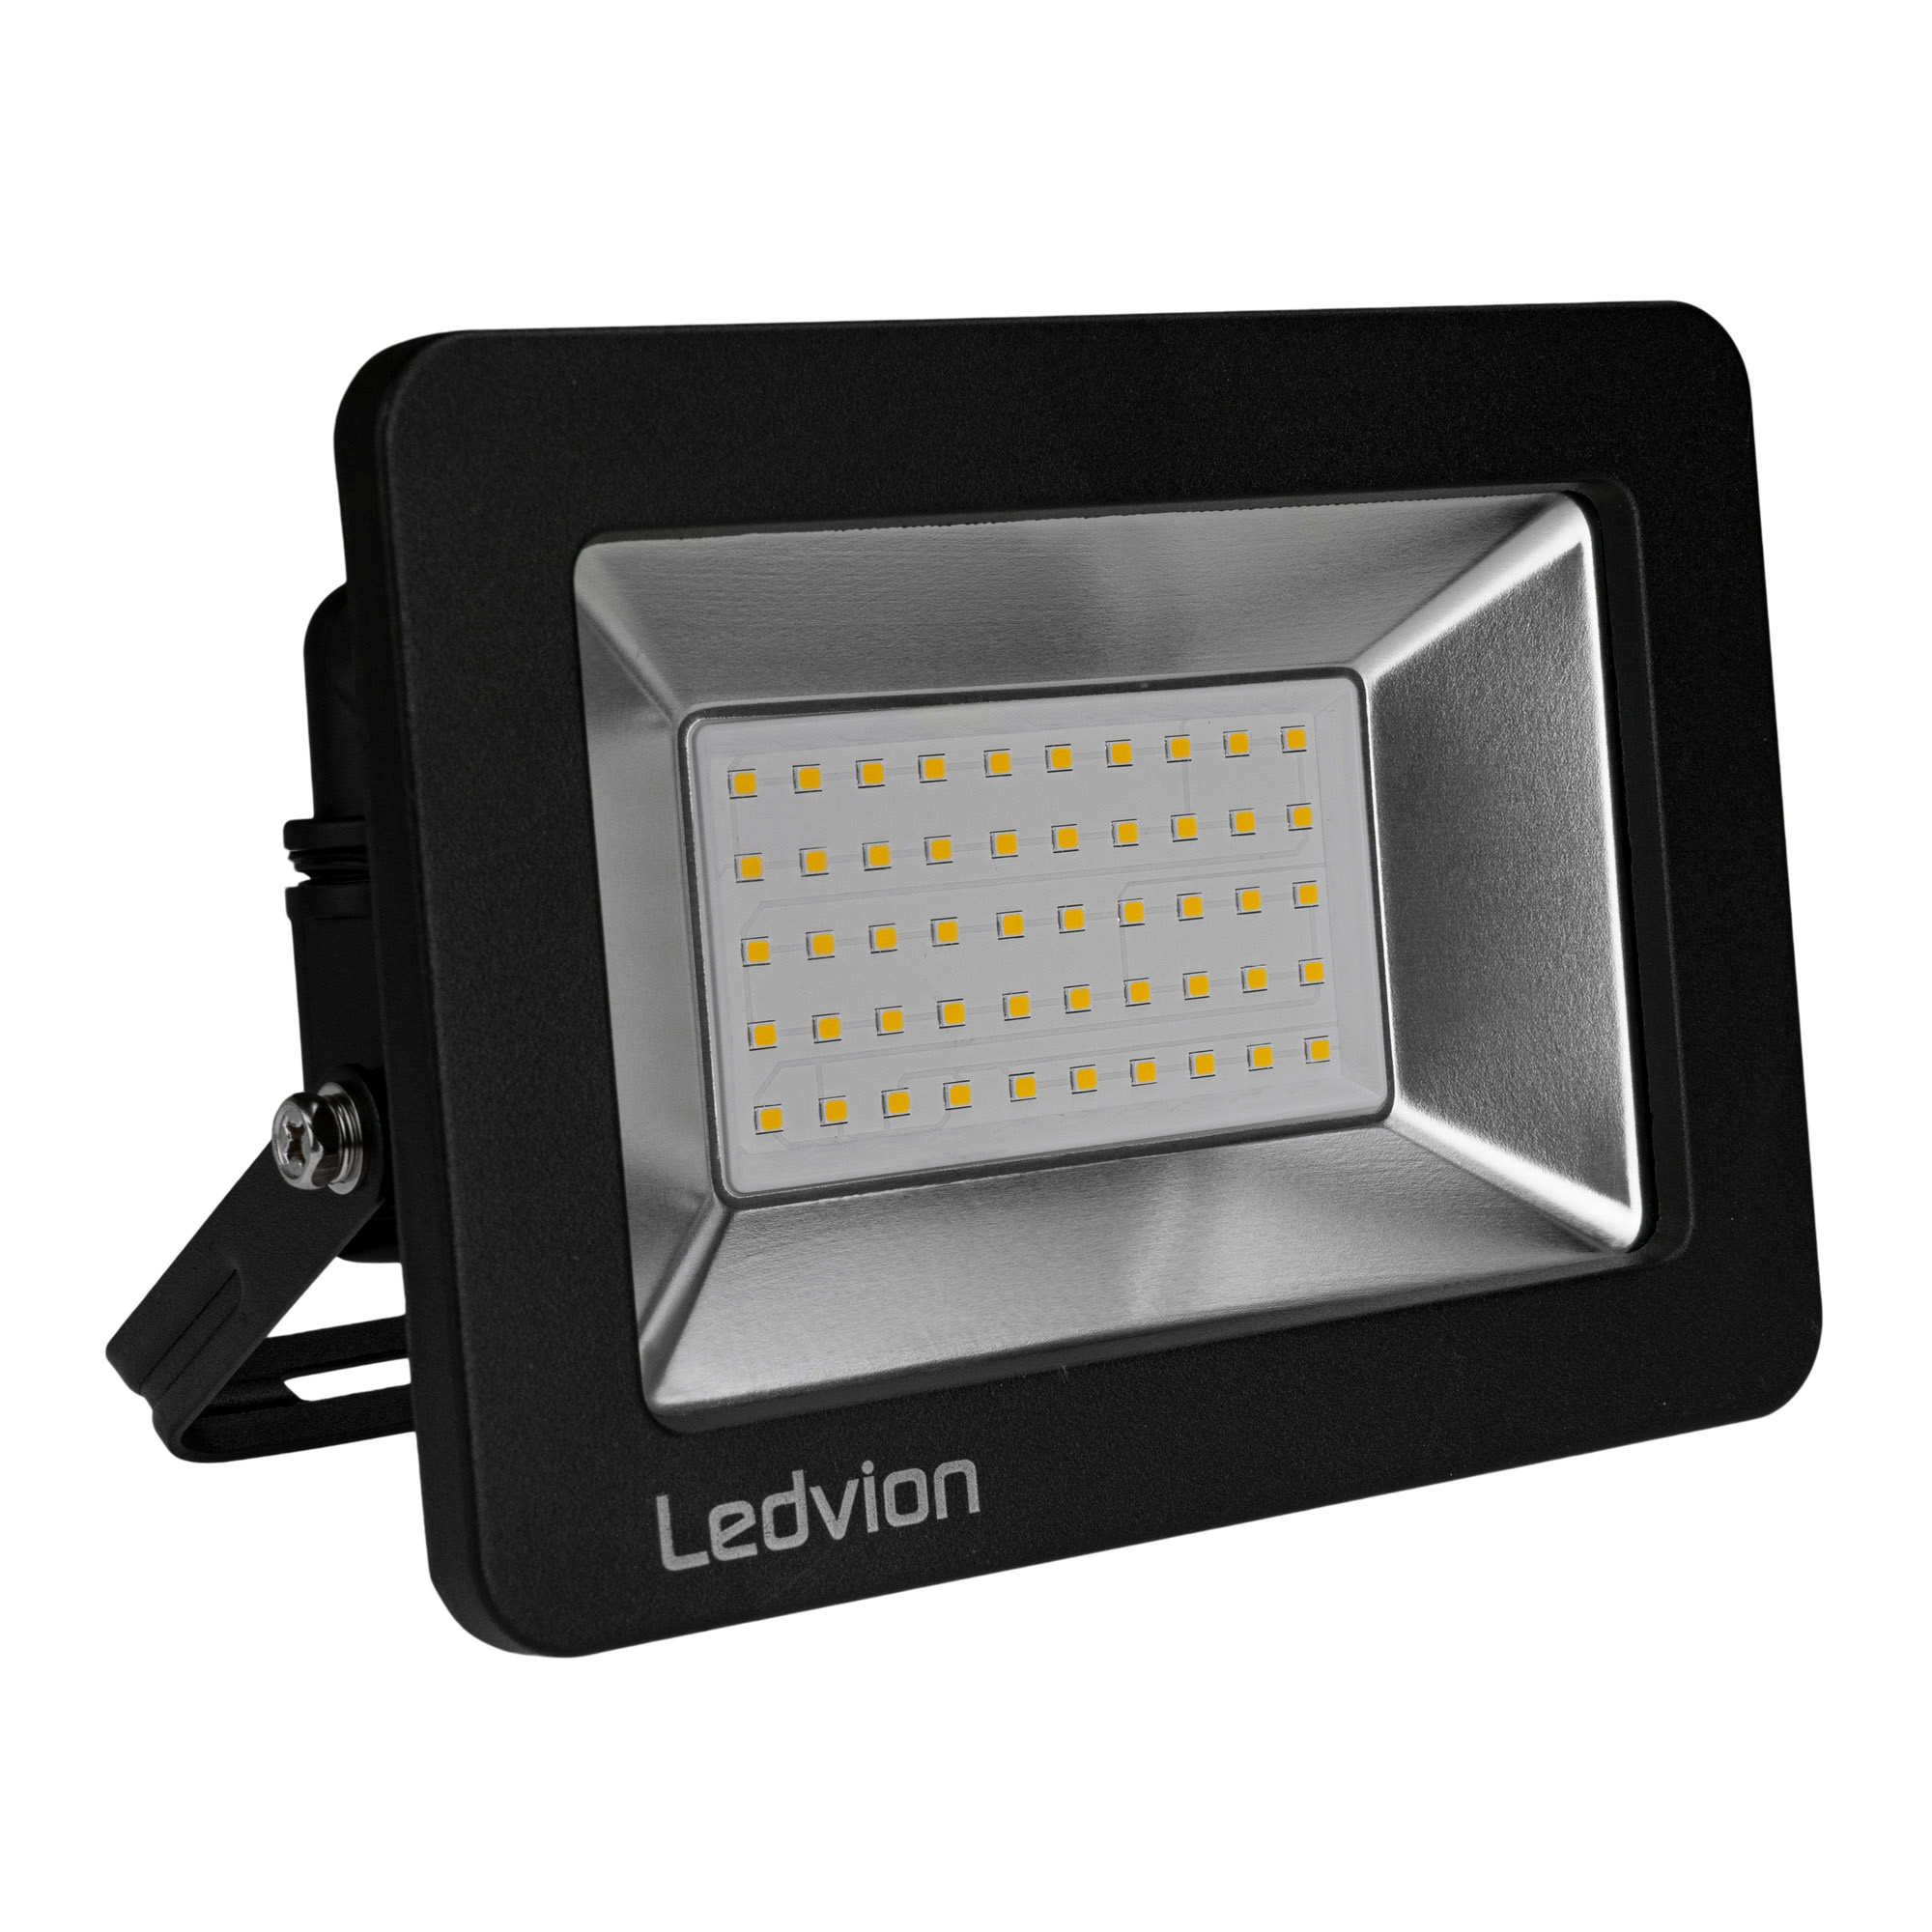 G - Projecteur à LED pour l'éclairage intérieur et extérieur